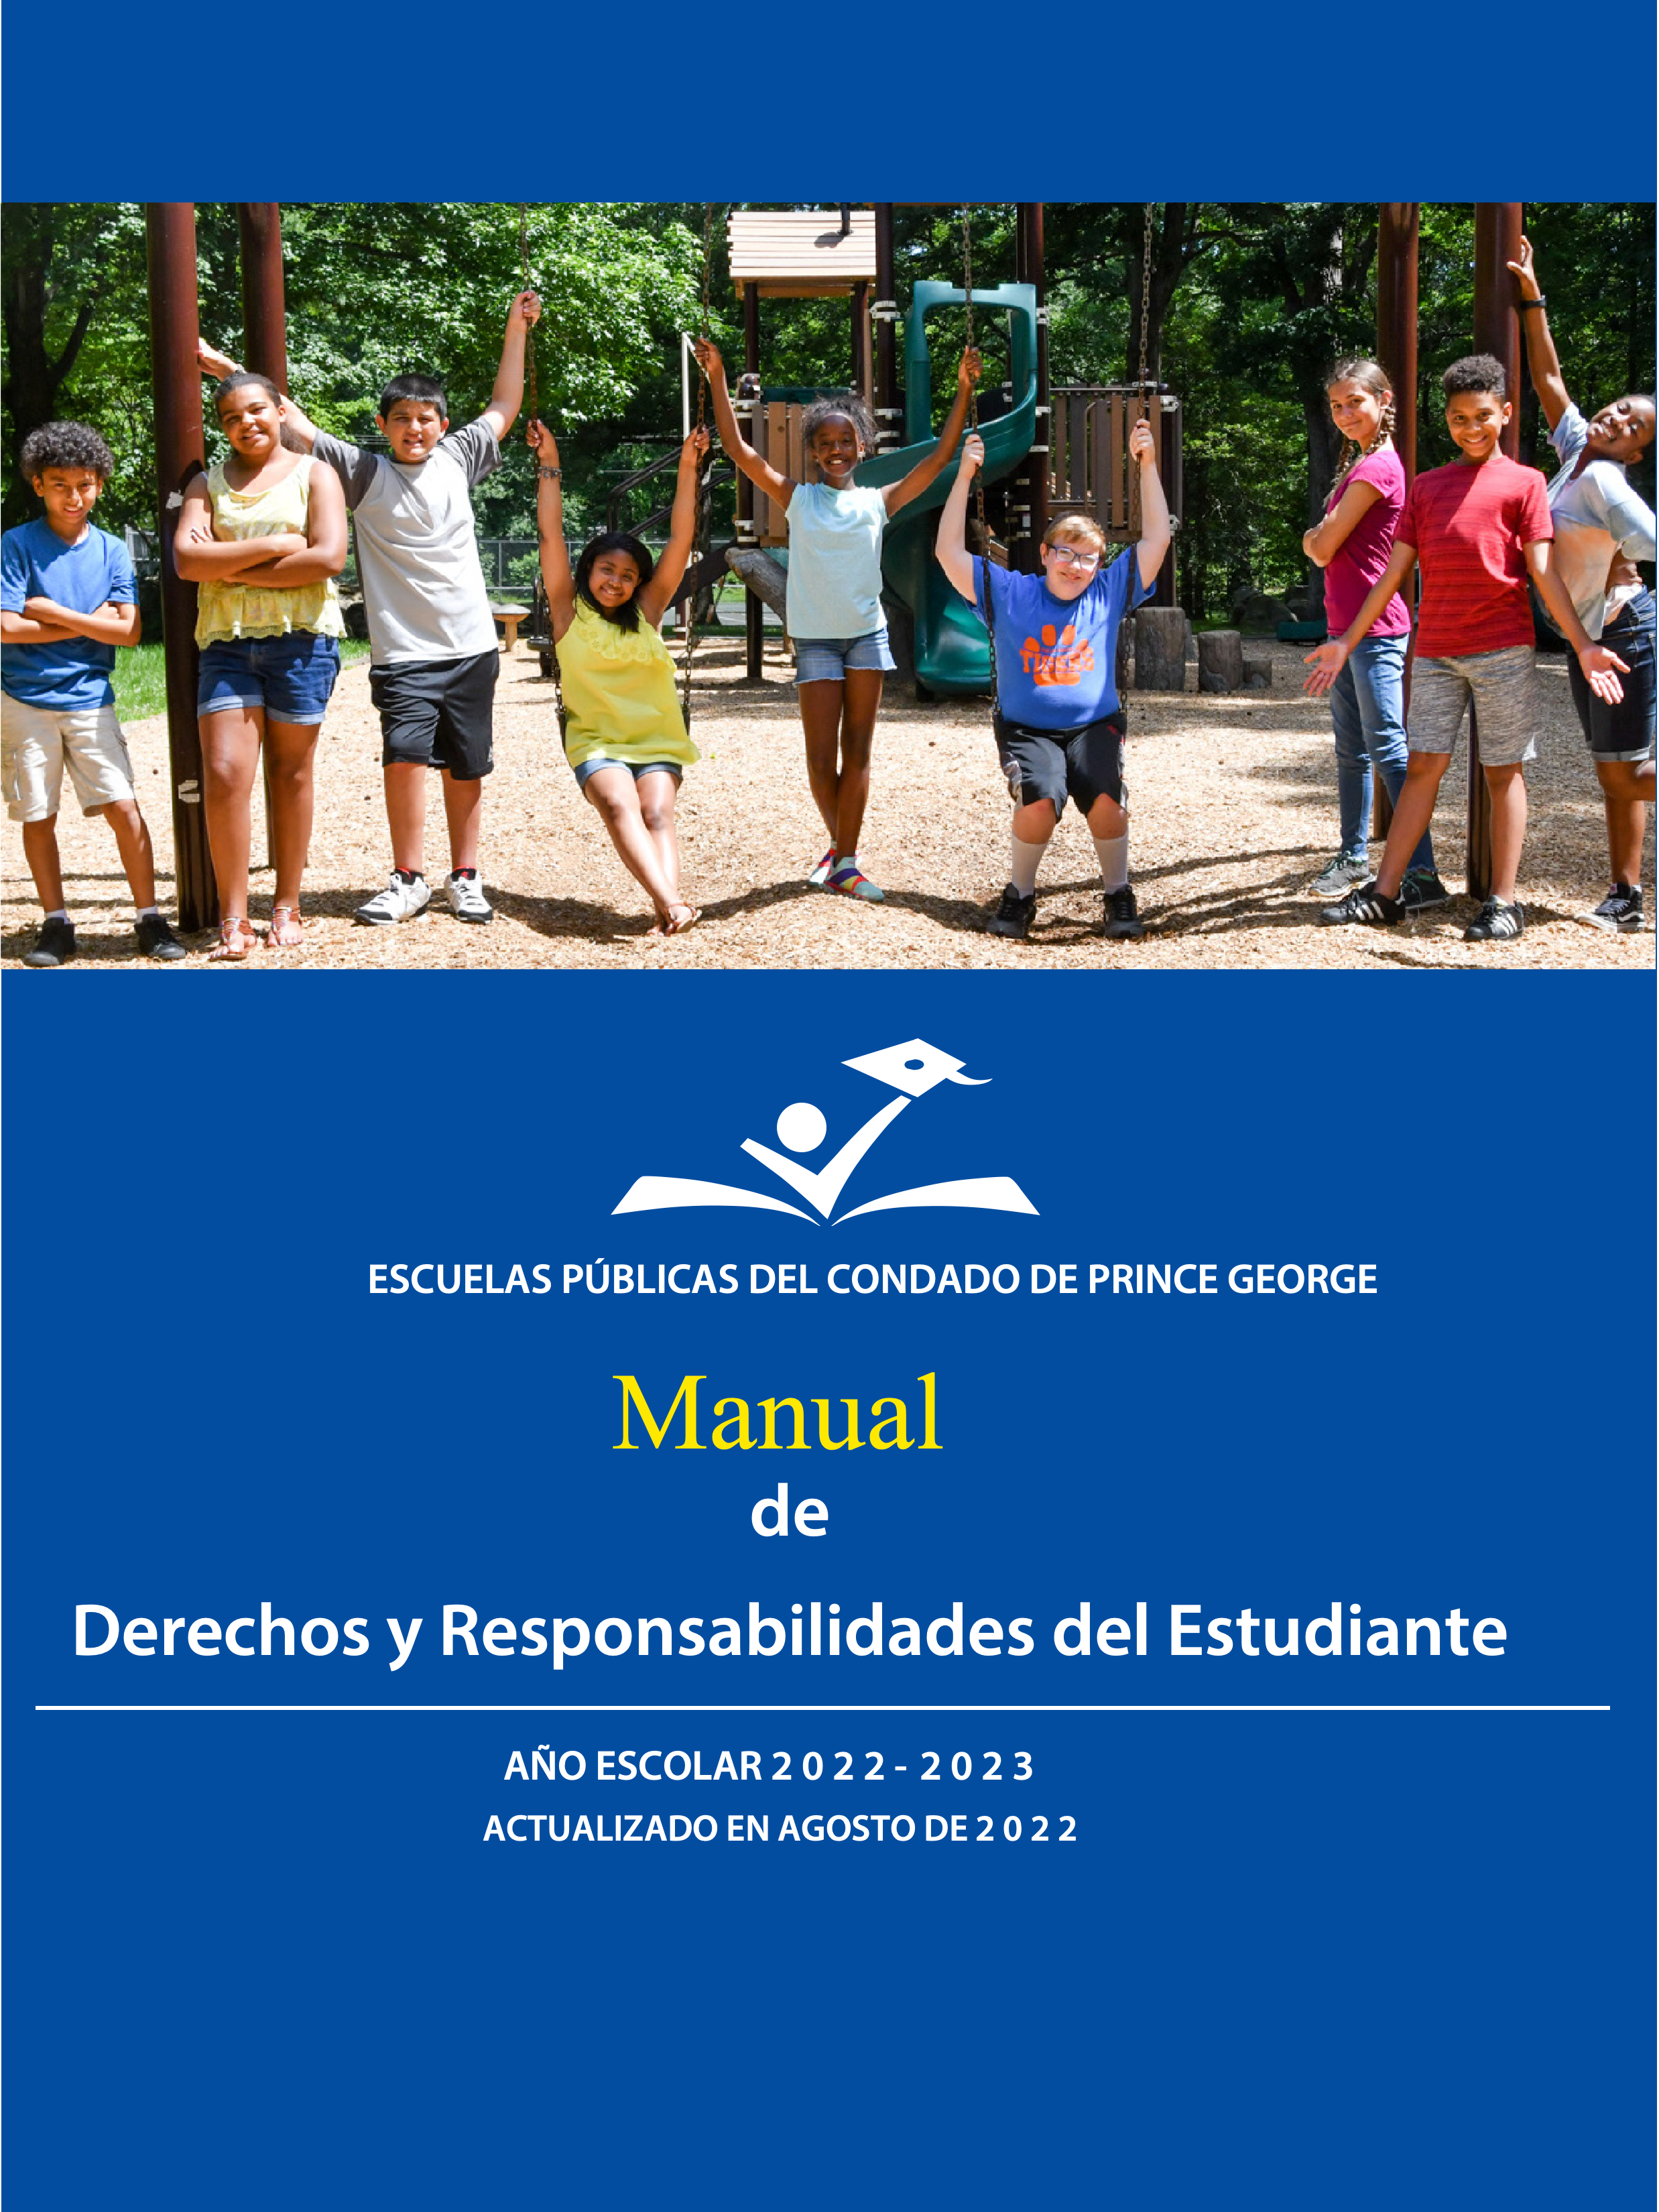 Cover of Manual de Derechos y Responsabilidades del Estudiante 22-23.jpg